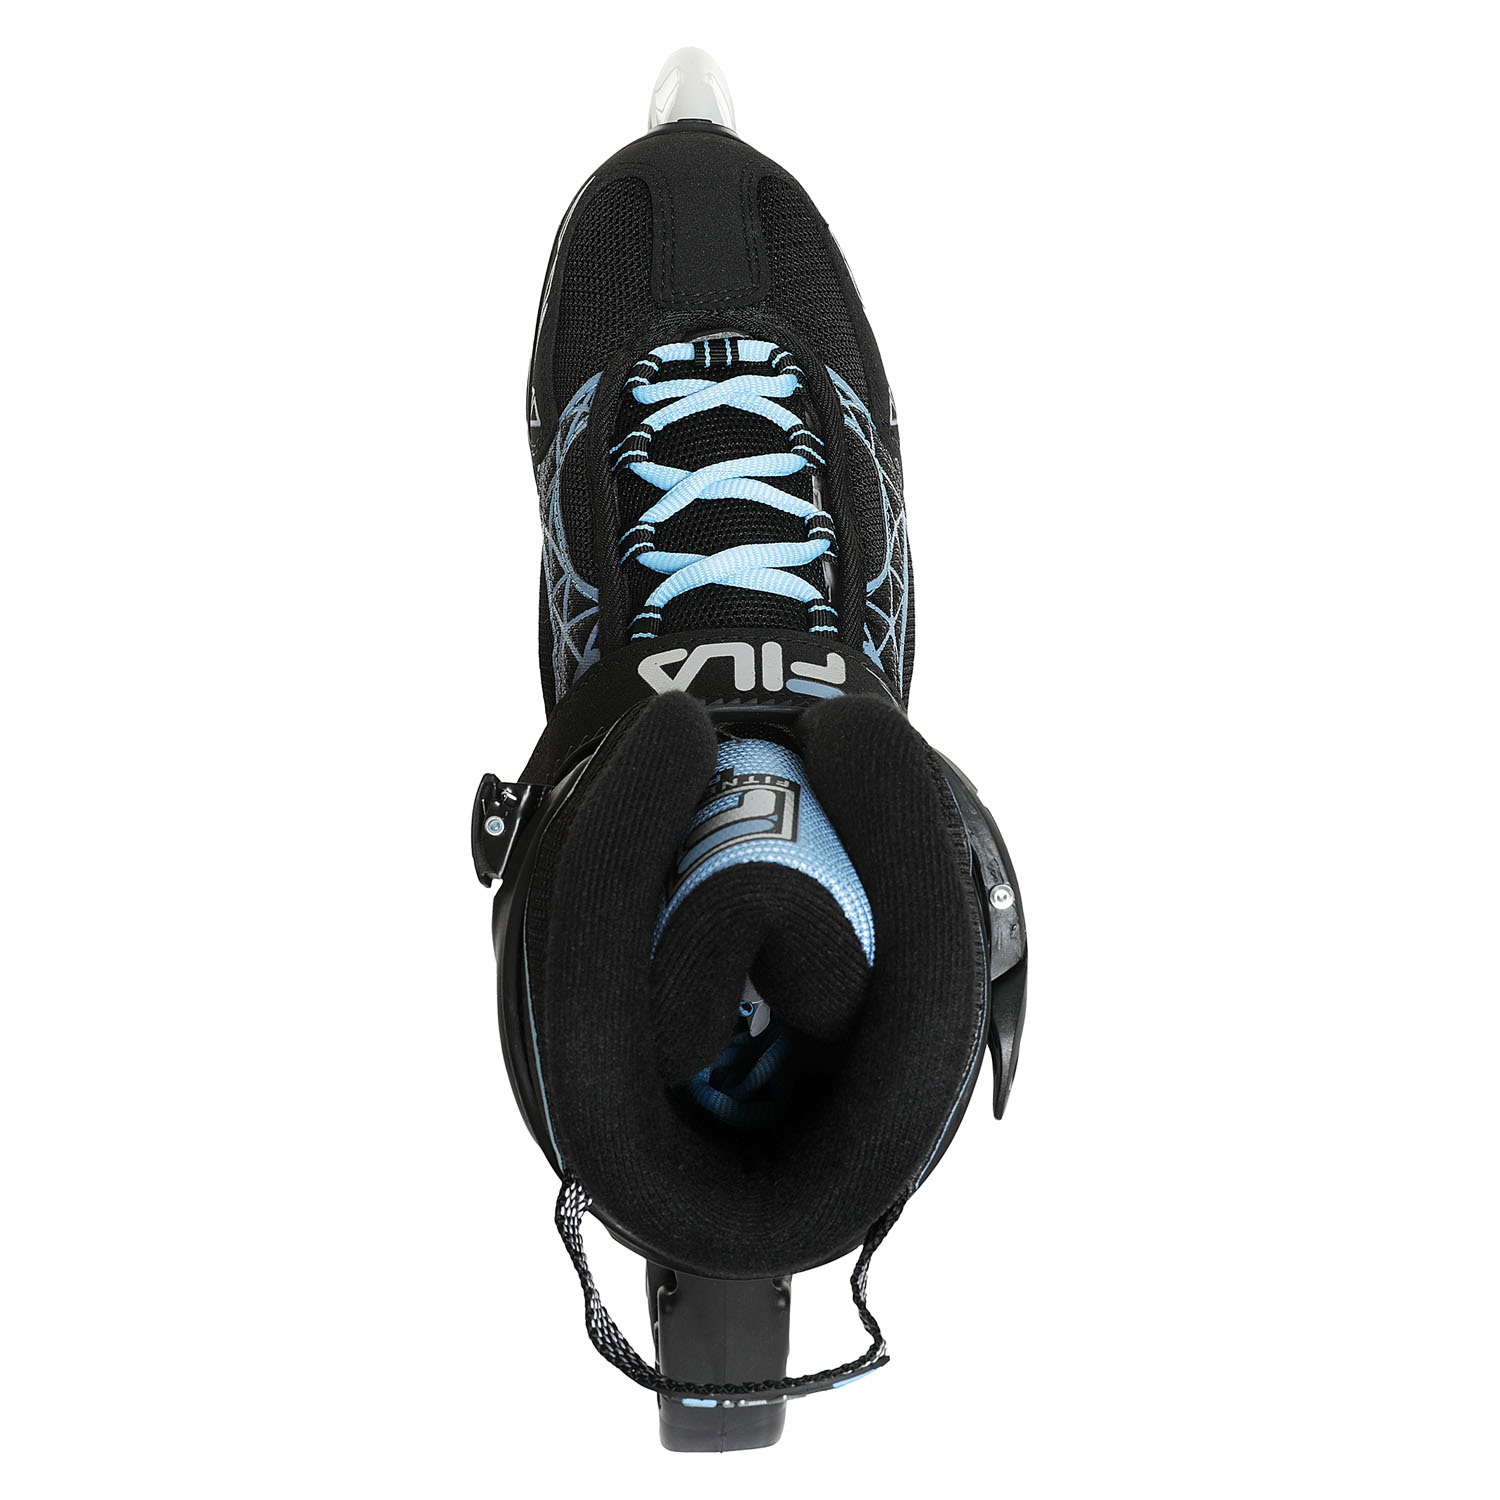 Роликовые коньки Fila Legacy Pro 84 Black/Light Blue